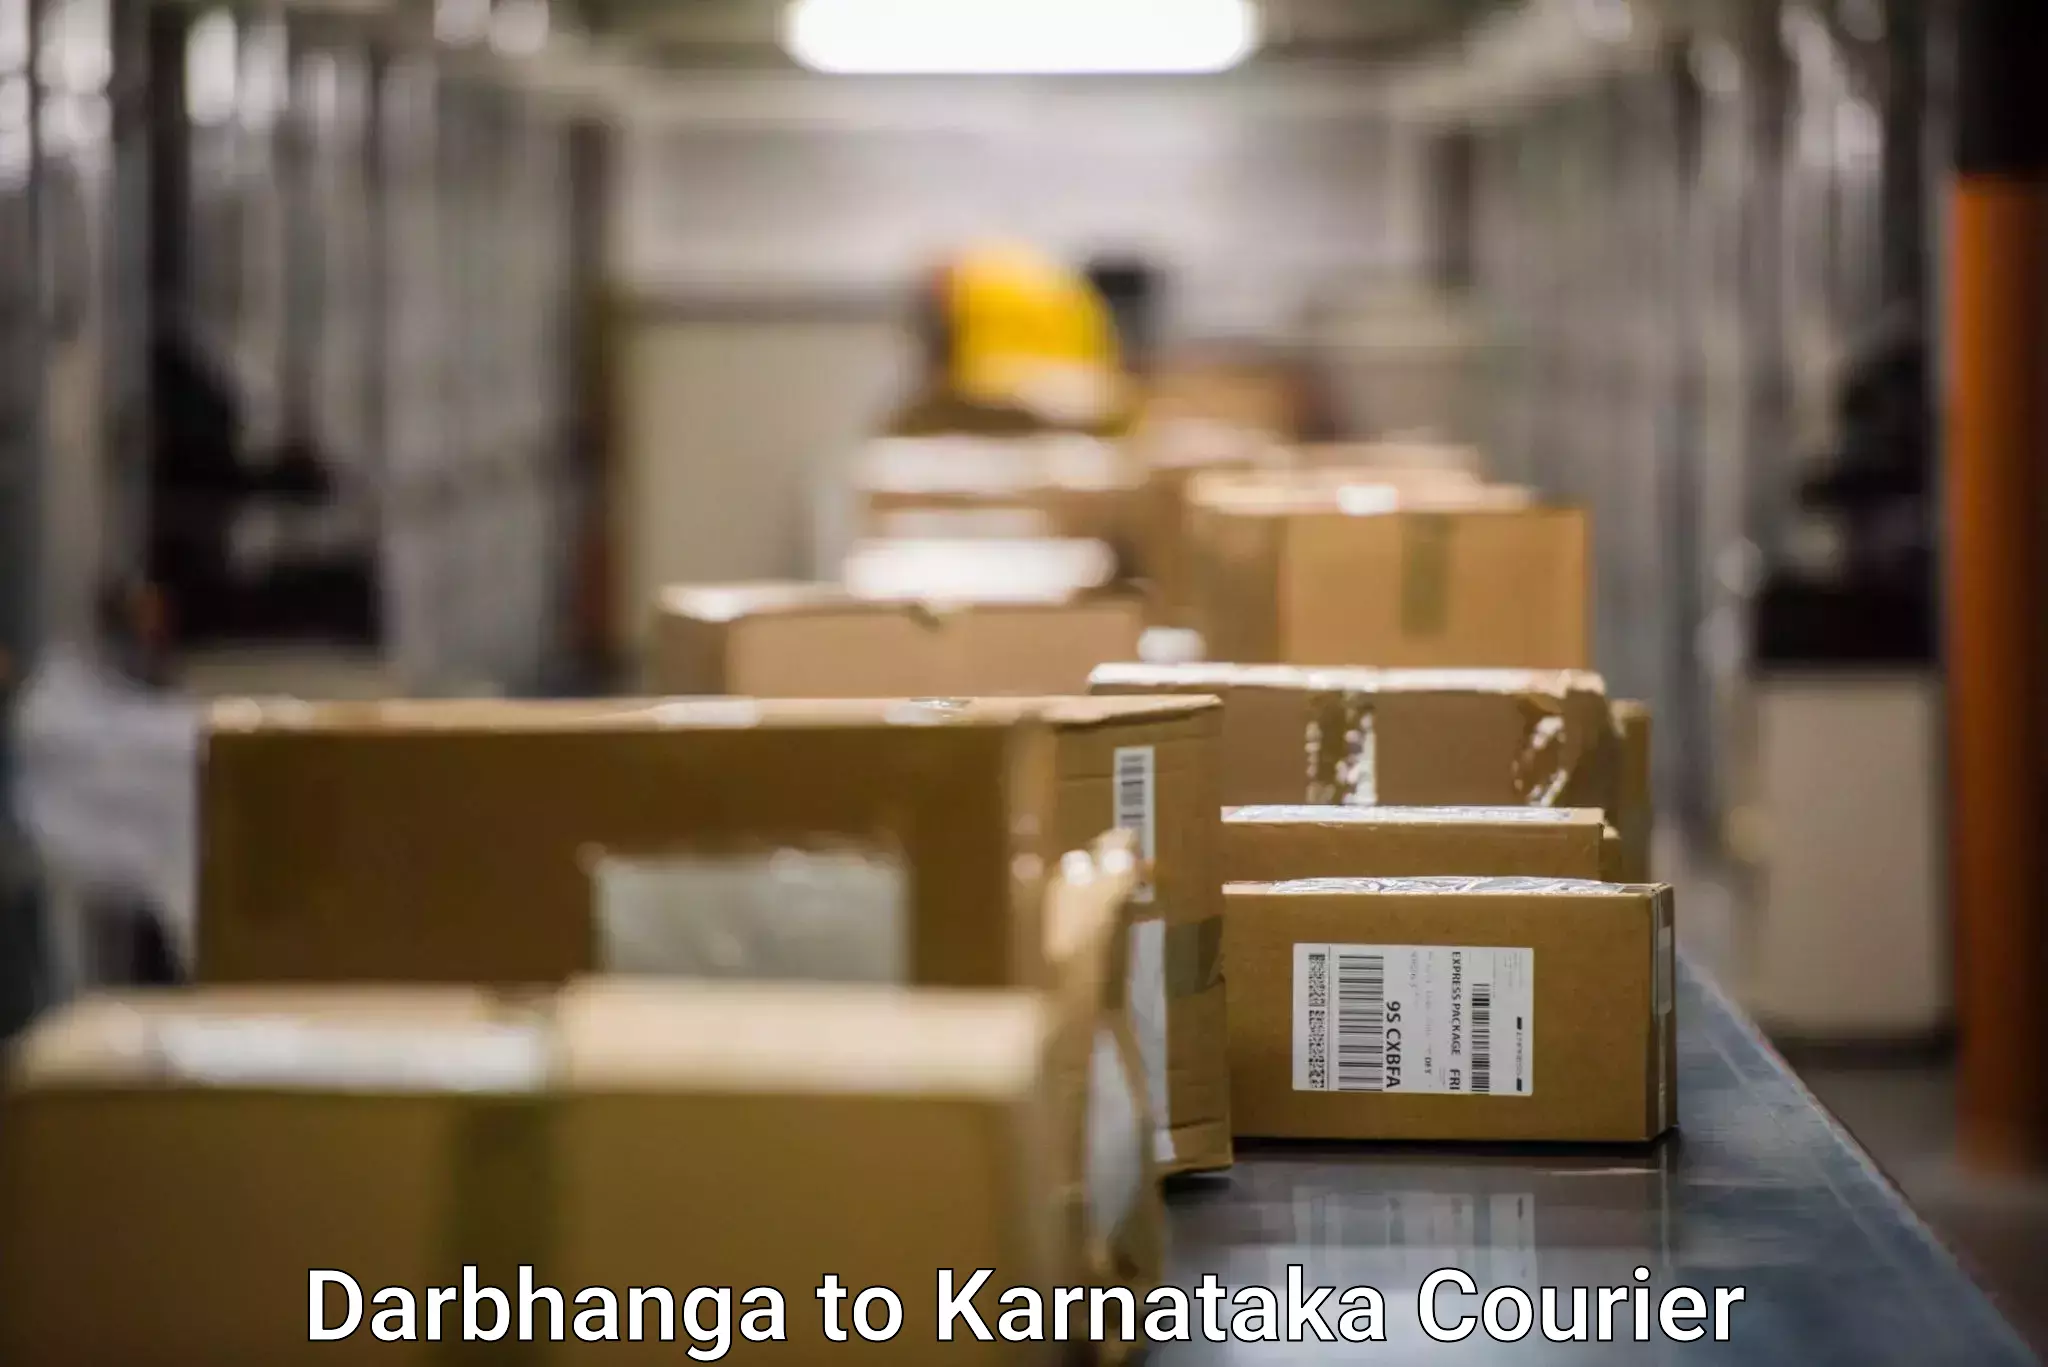 Local delivery service Darbhanga to Bhadravathi